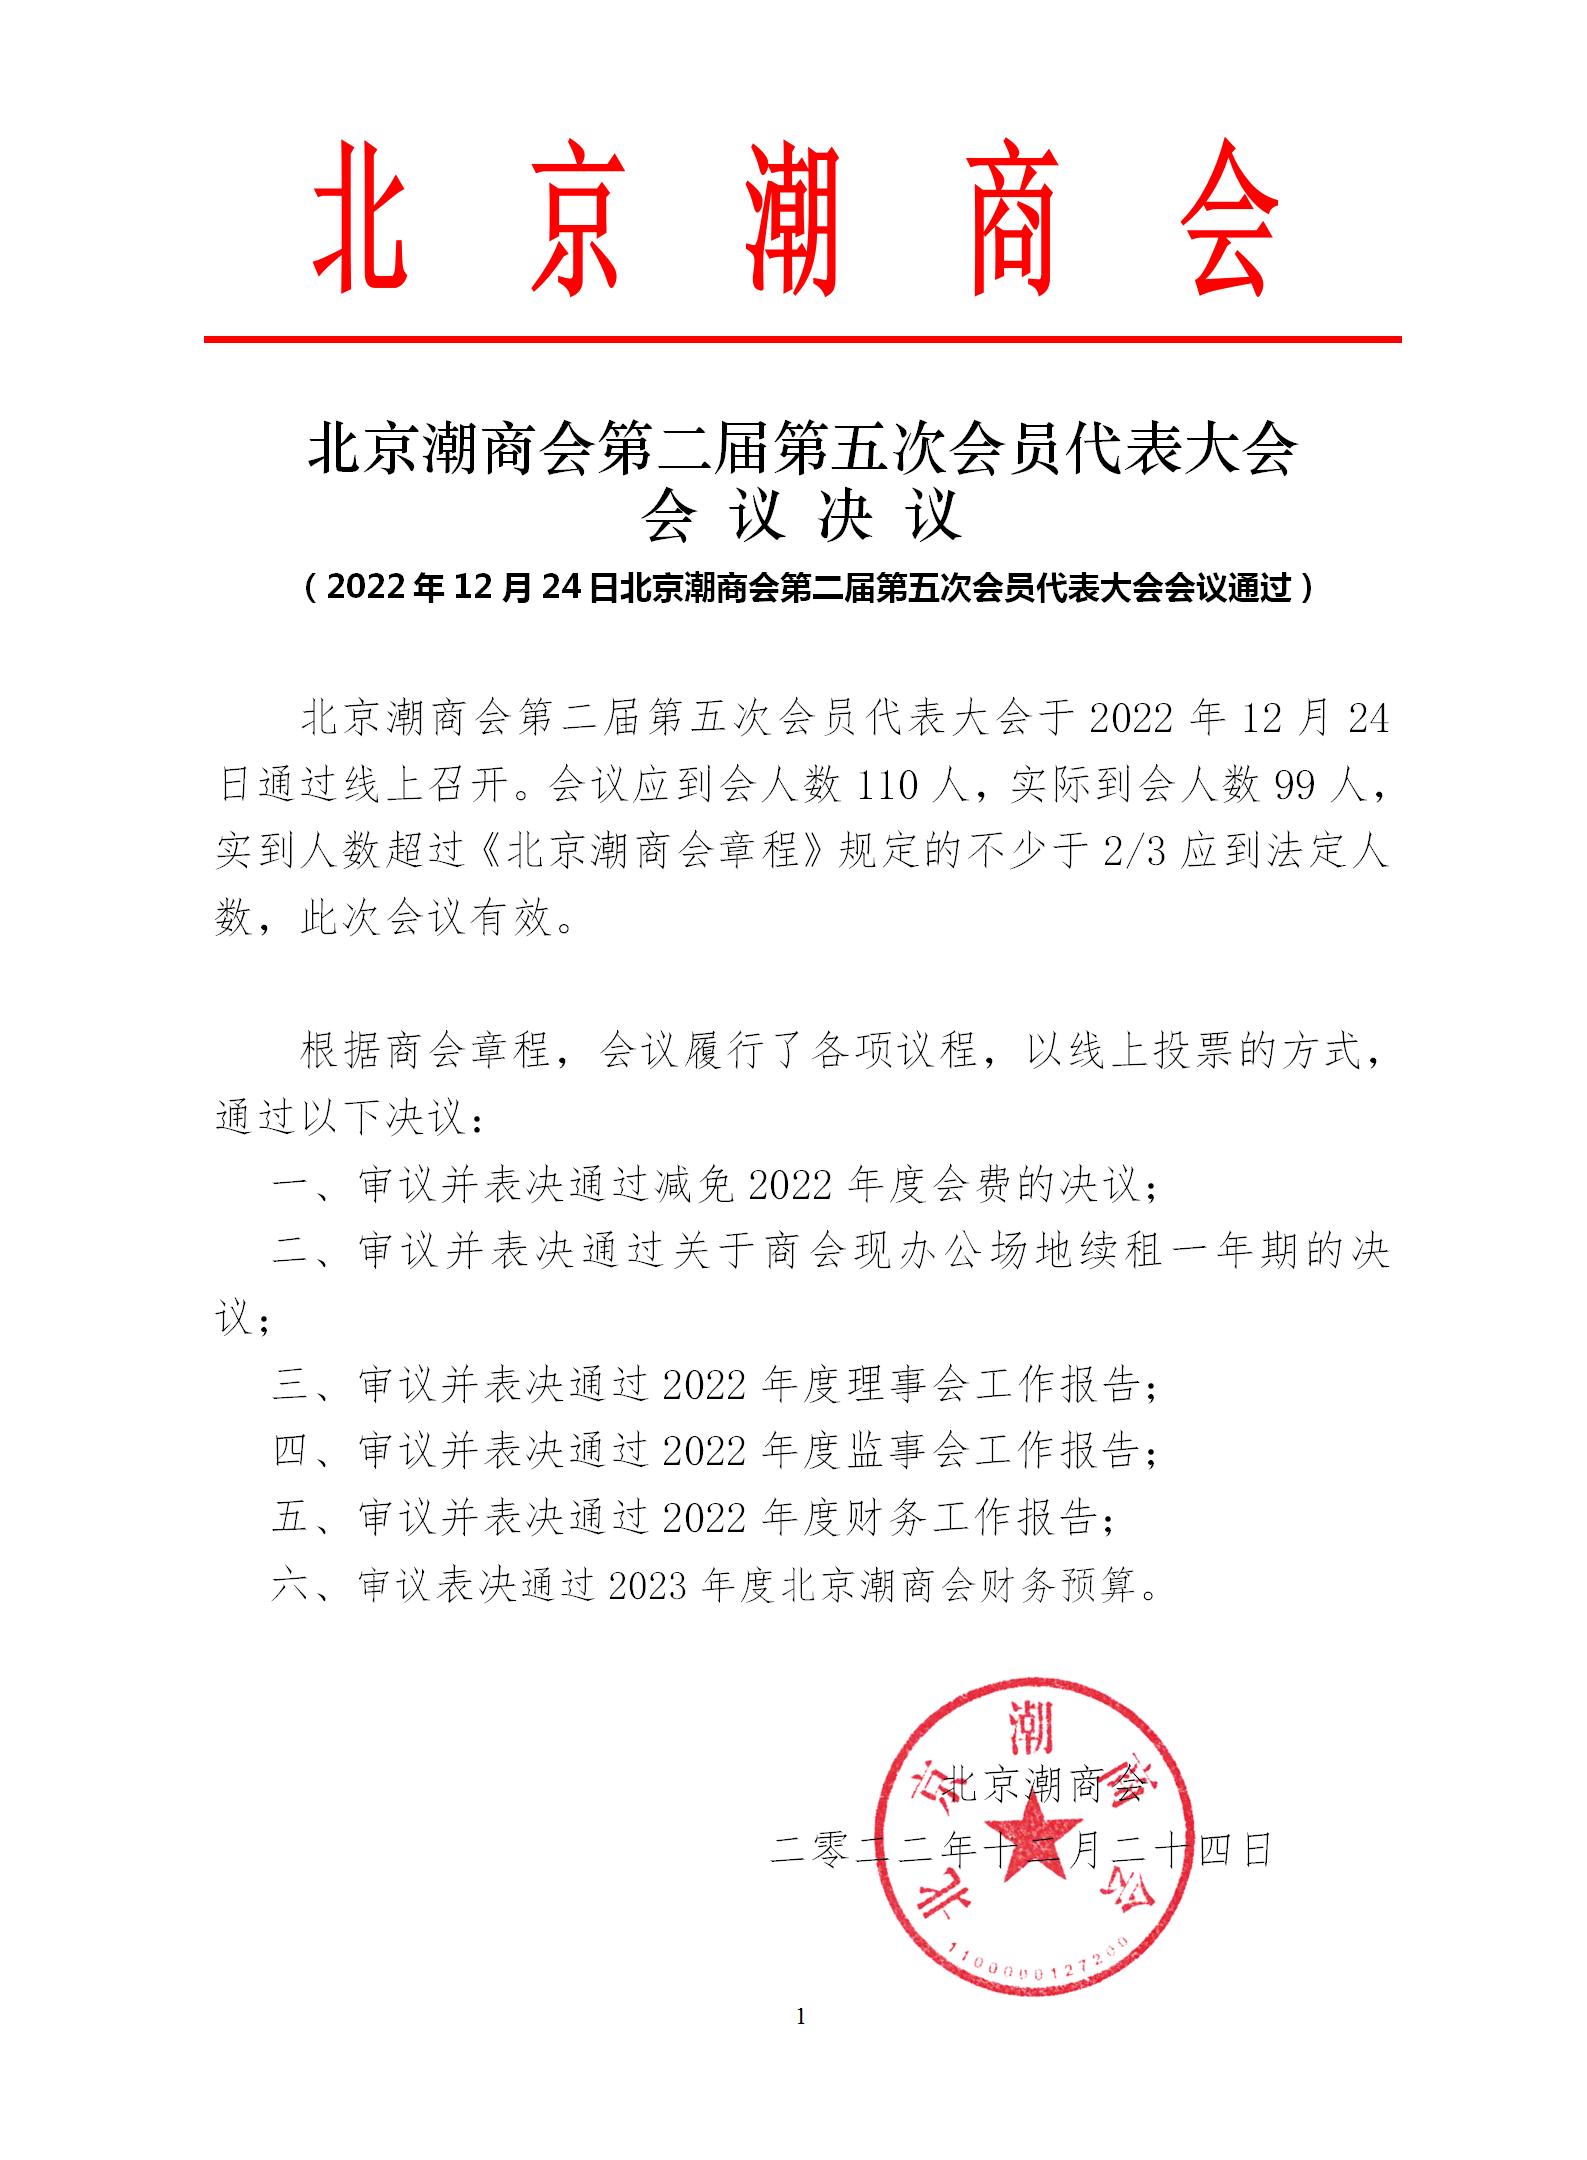 20221224北京潮商会第二届第五次会员代表大会会议决议